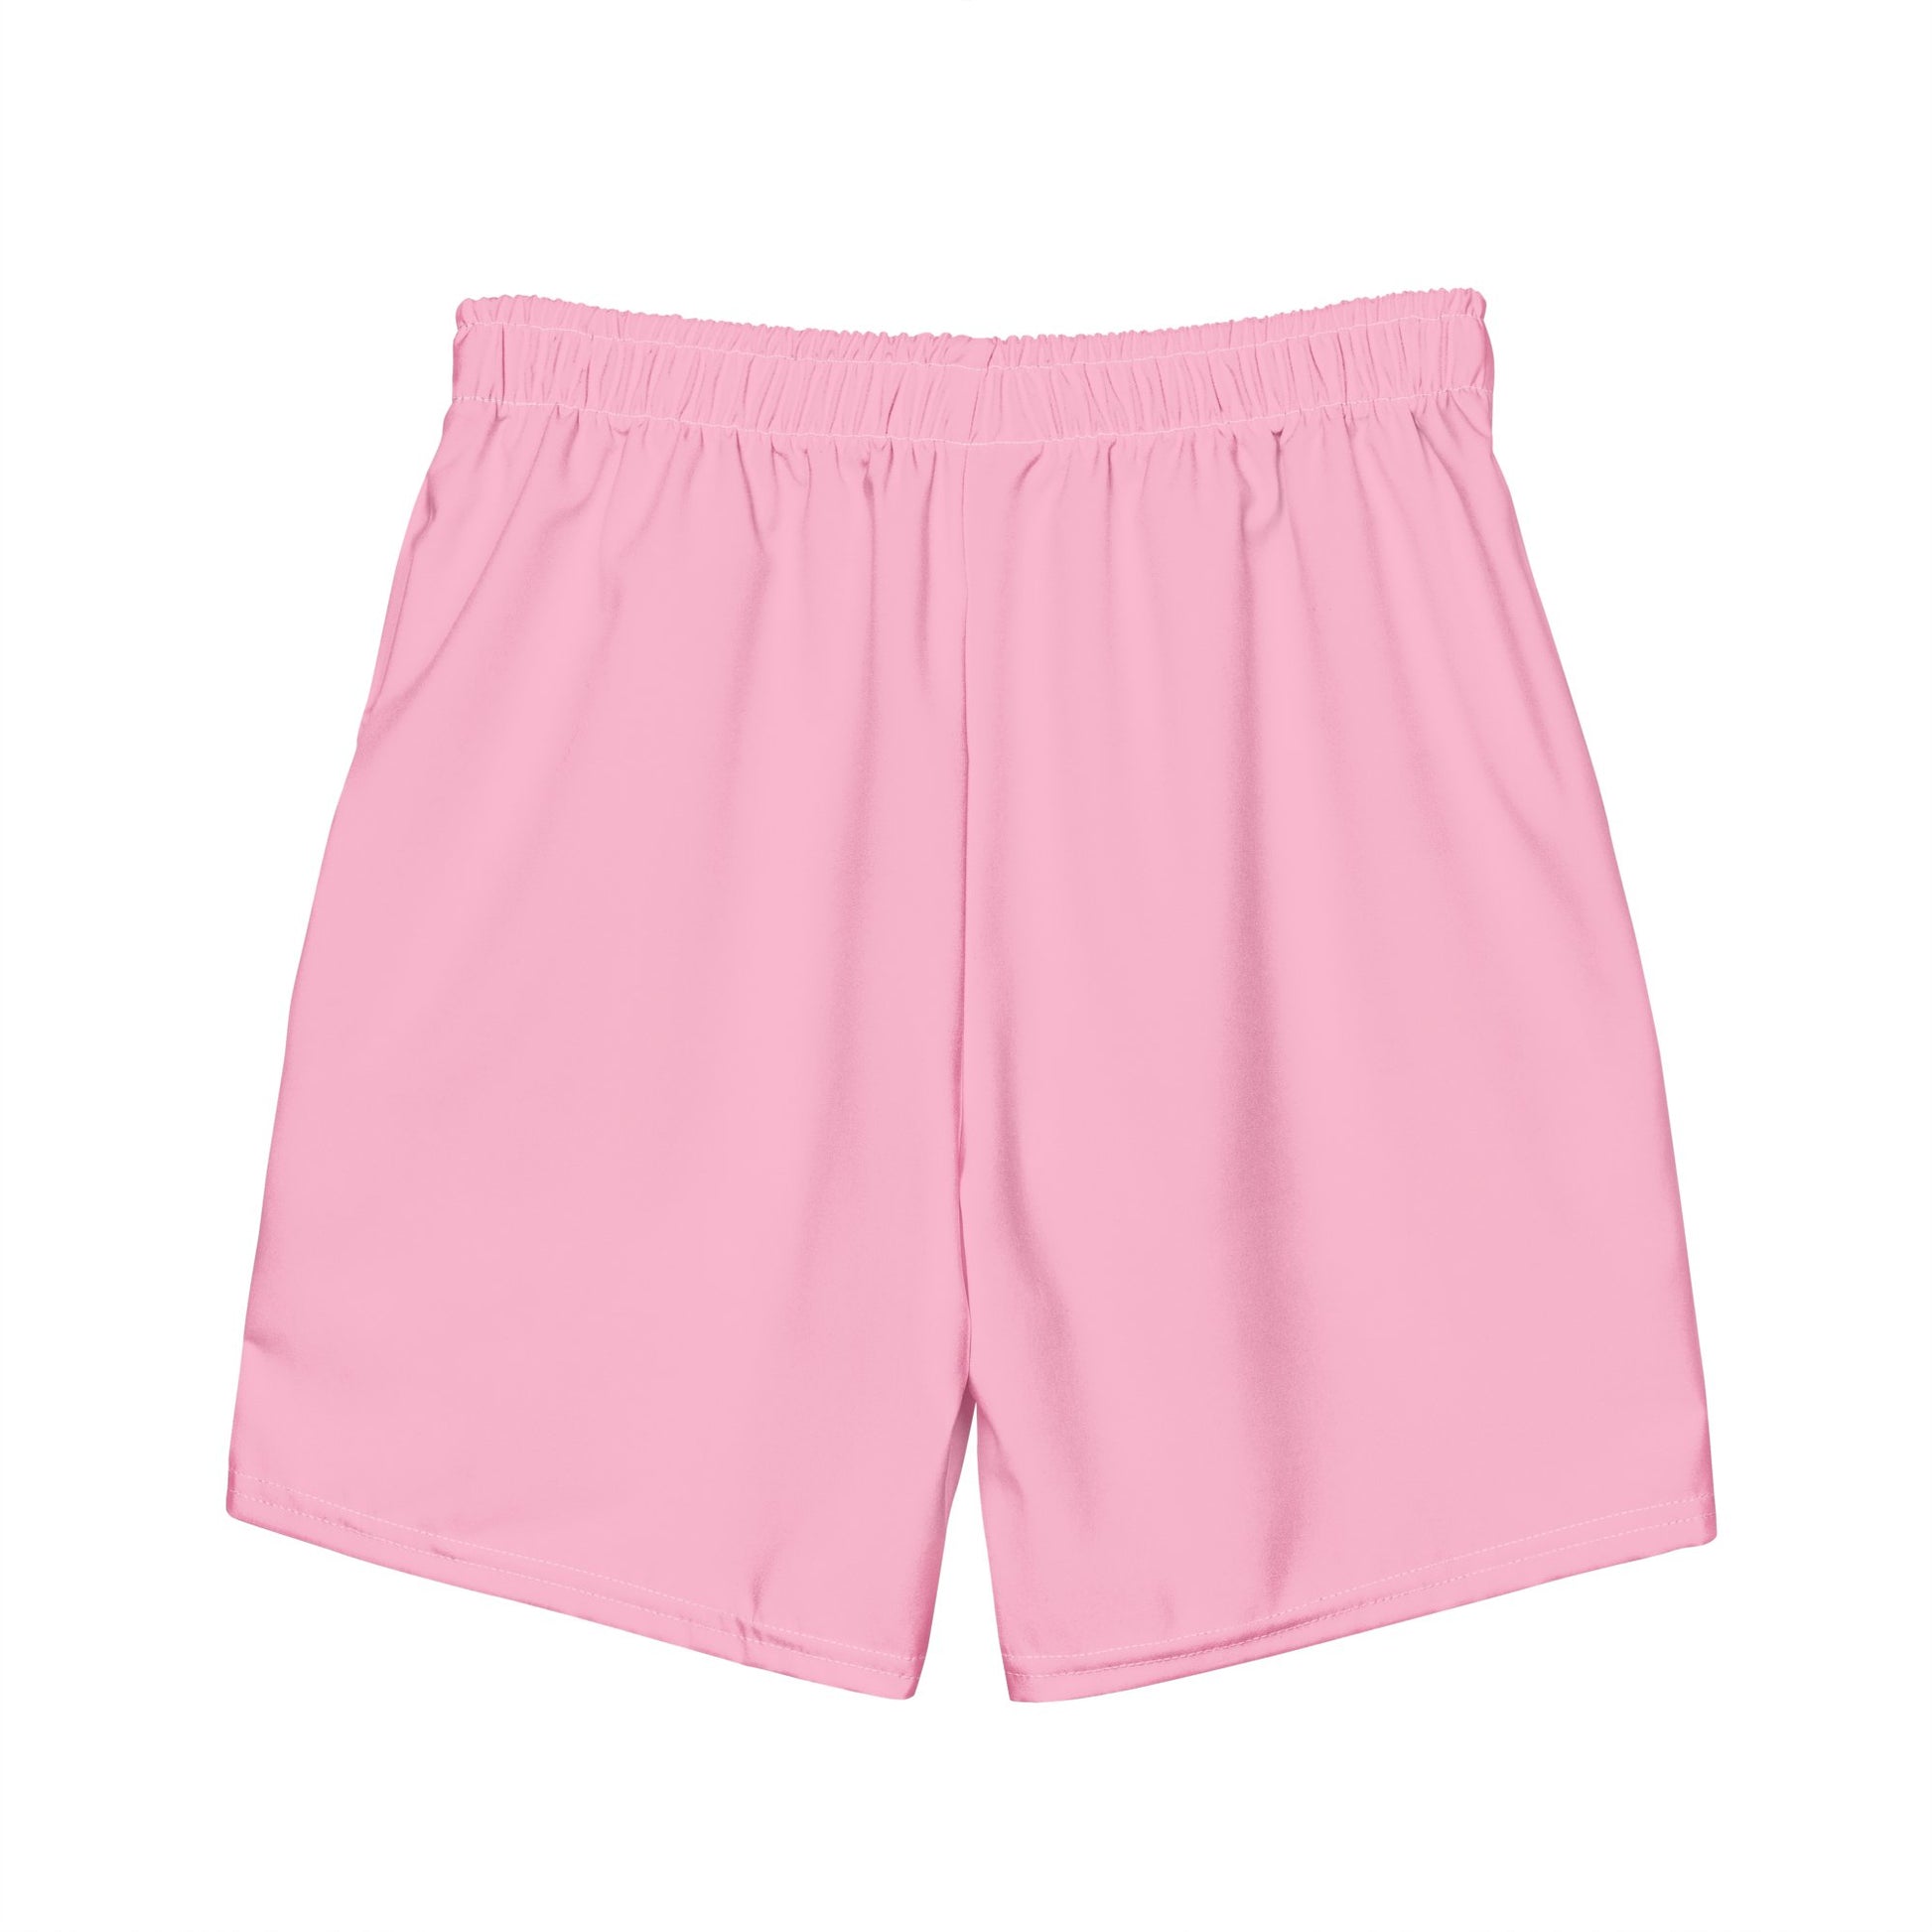 Pink with Black Signature Unisex Shorts - Bearclothing